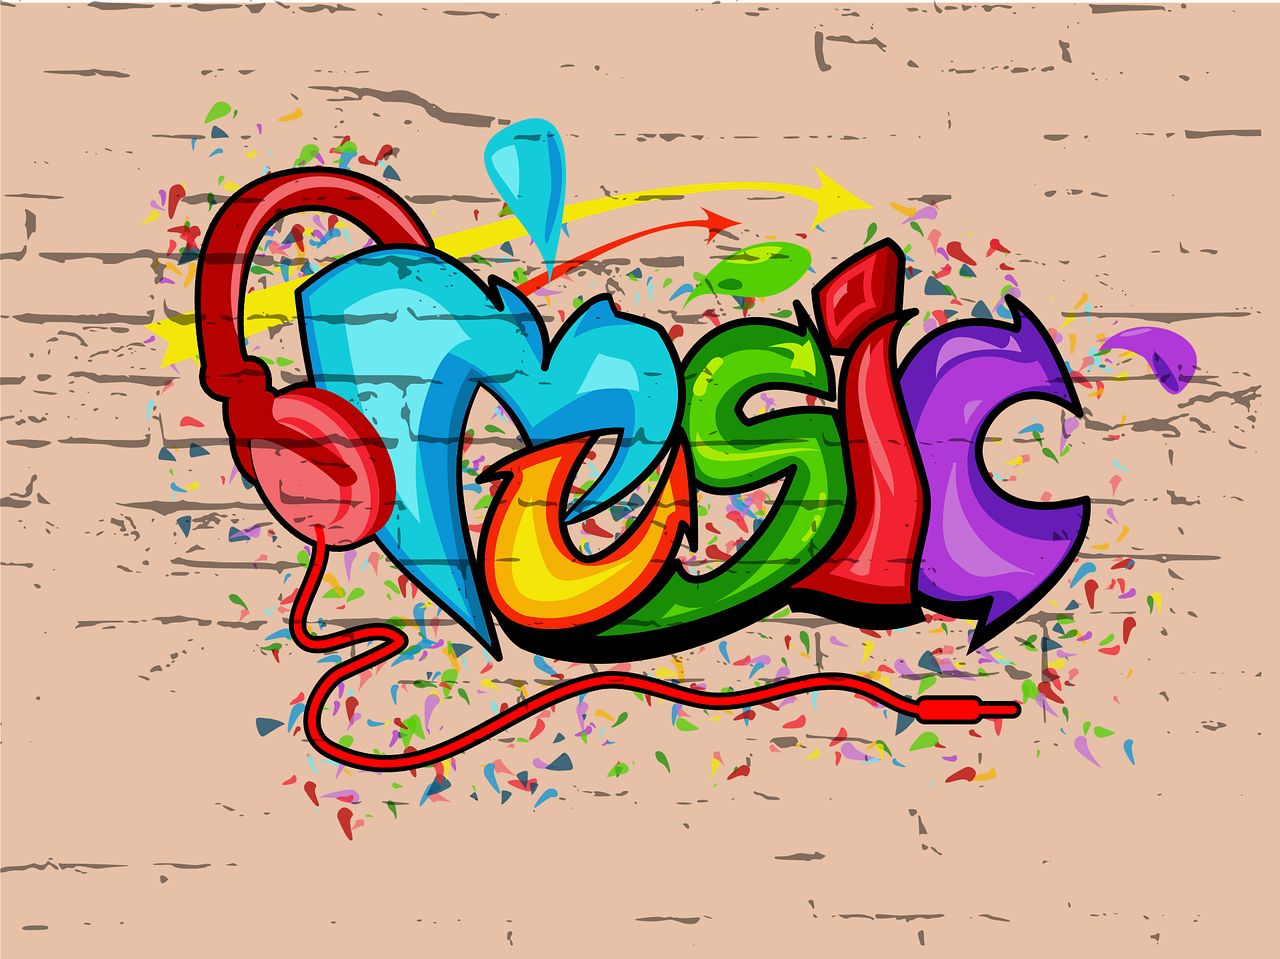 Le mot "Music" est écrit façon crobar avec de nombreuses couleurs. Le "M" de Music a un casque dessiné sur ses extrémités.